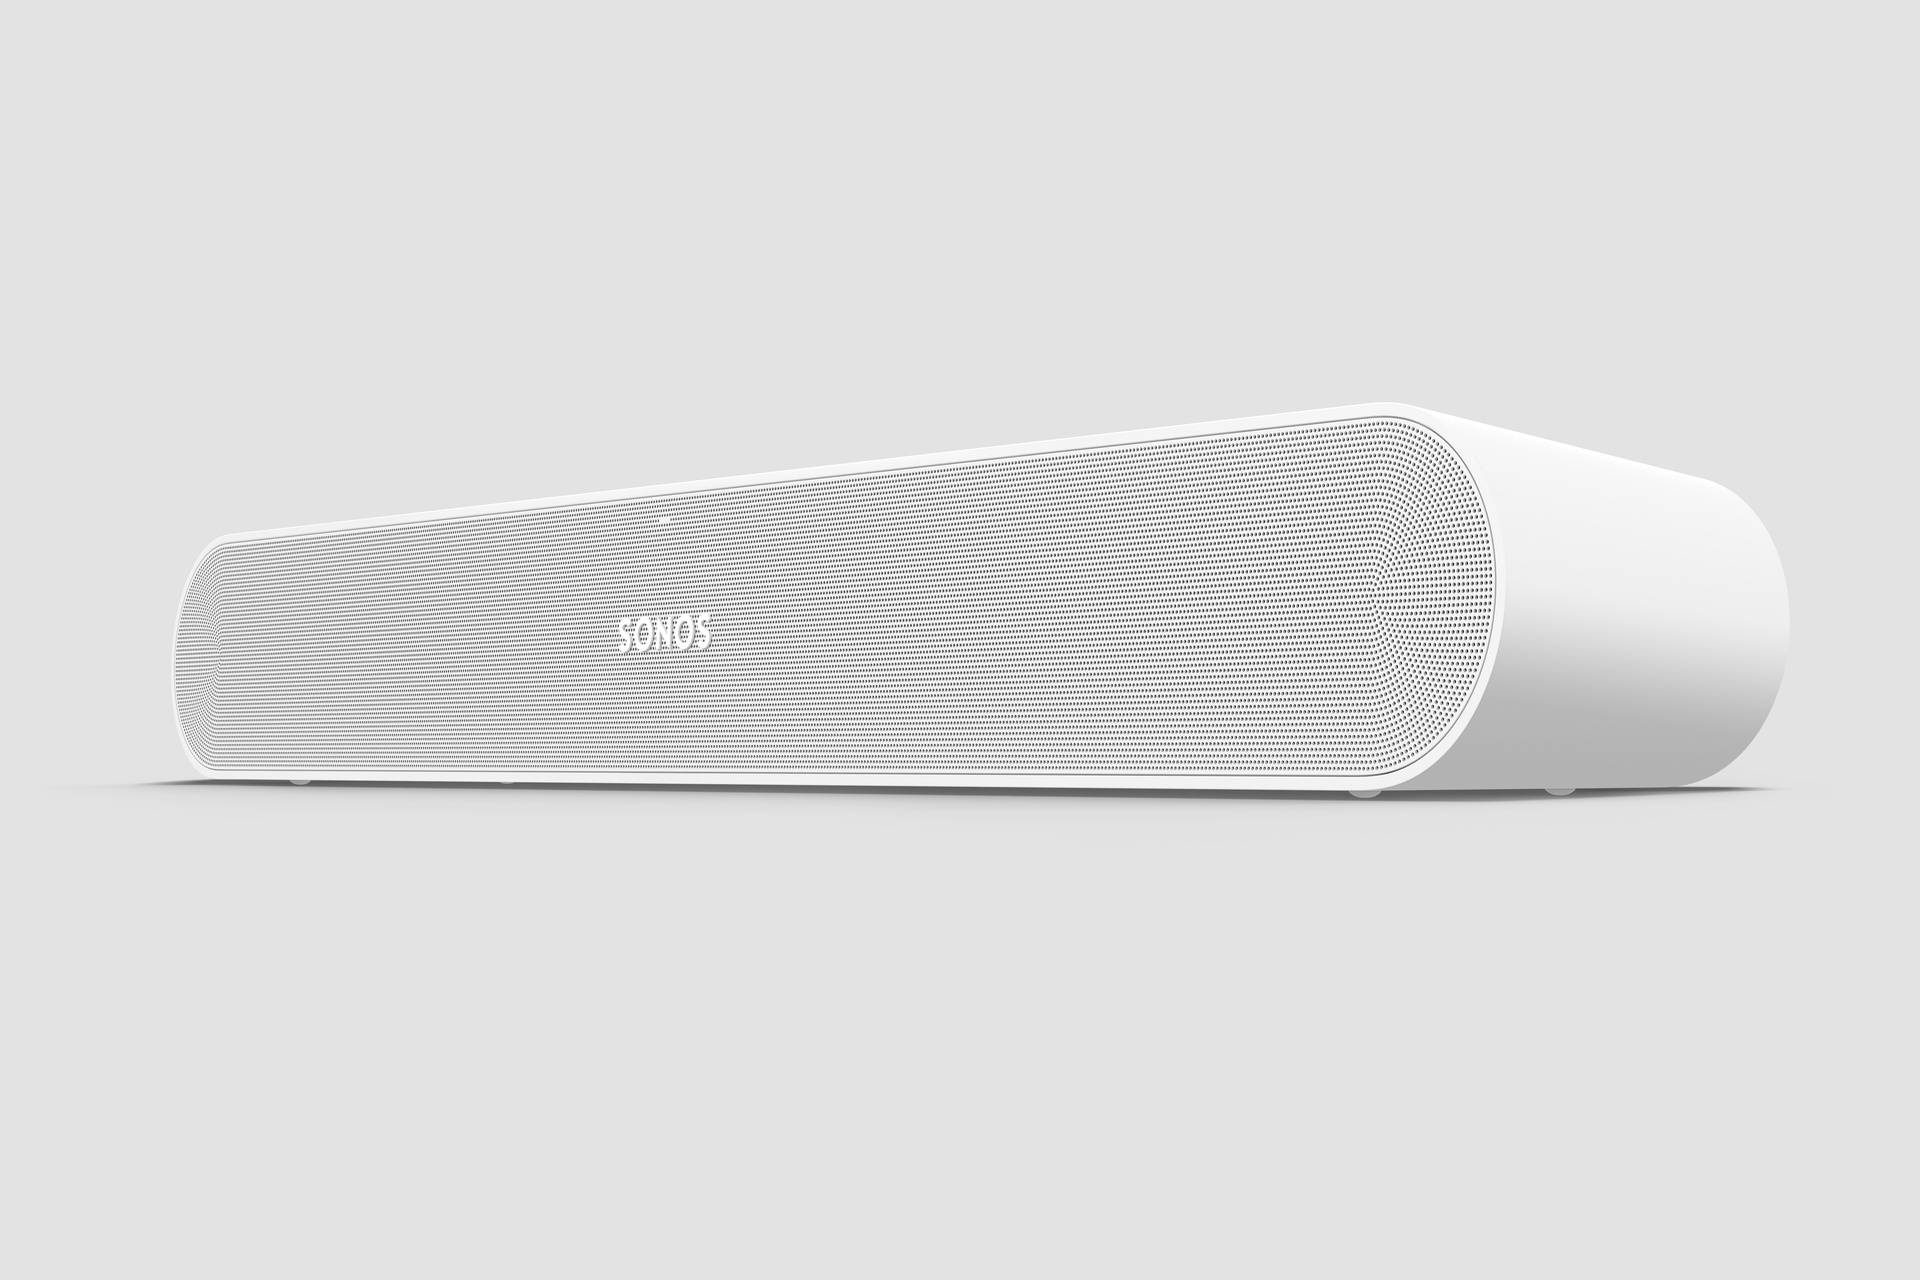 Isprobali smo Ray: Najmanji i najpovoljniji Sonos soundbar